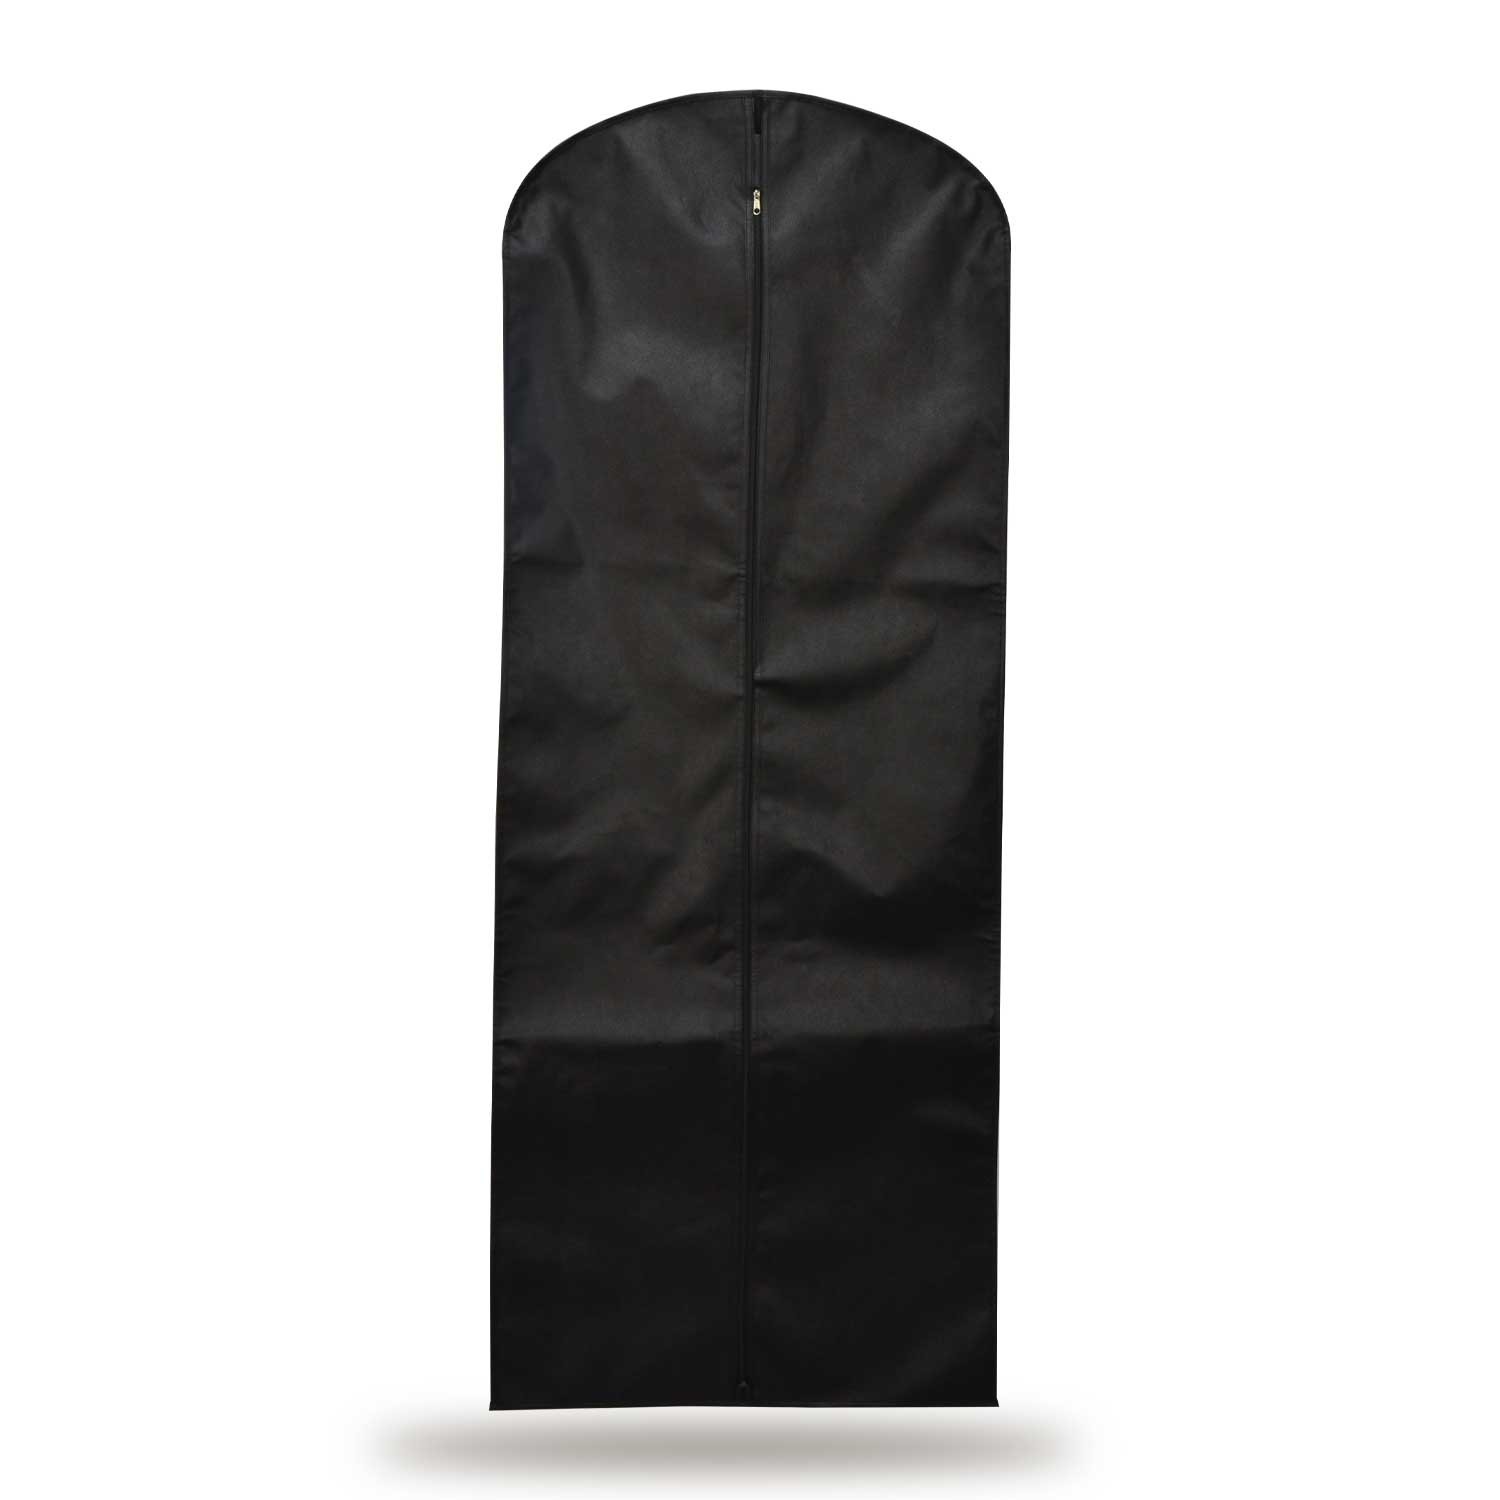 Gelinlik, Elbise Kılıfı 72x180 Cm Açılabilir Körük Gamboç - Siyah